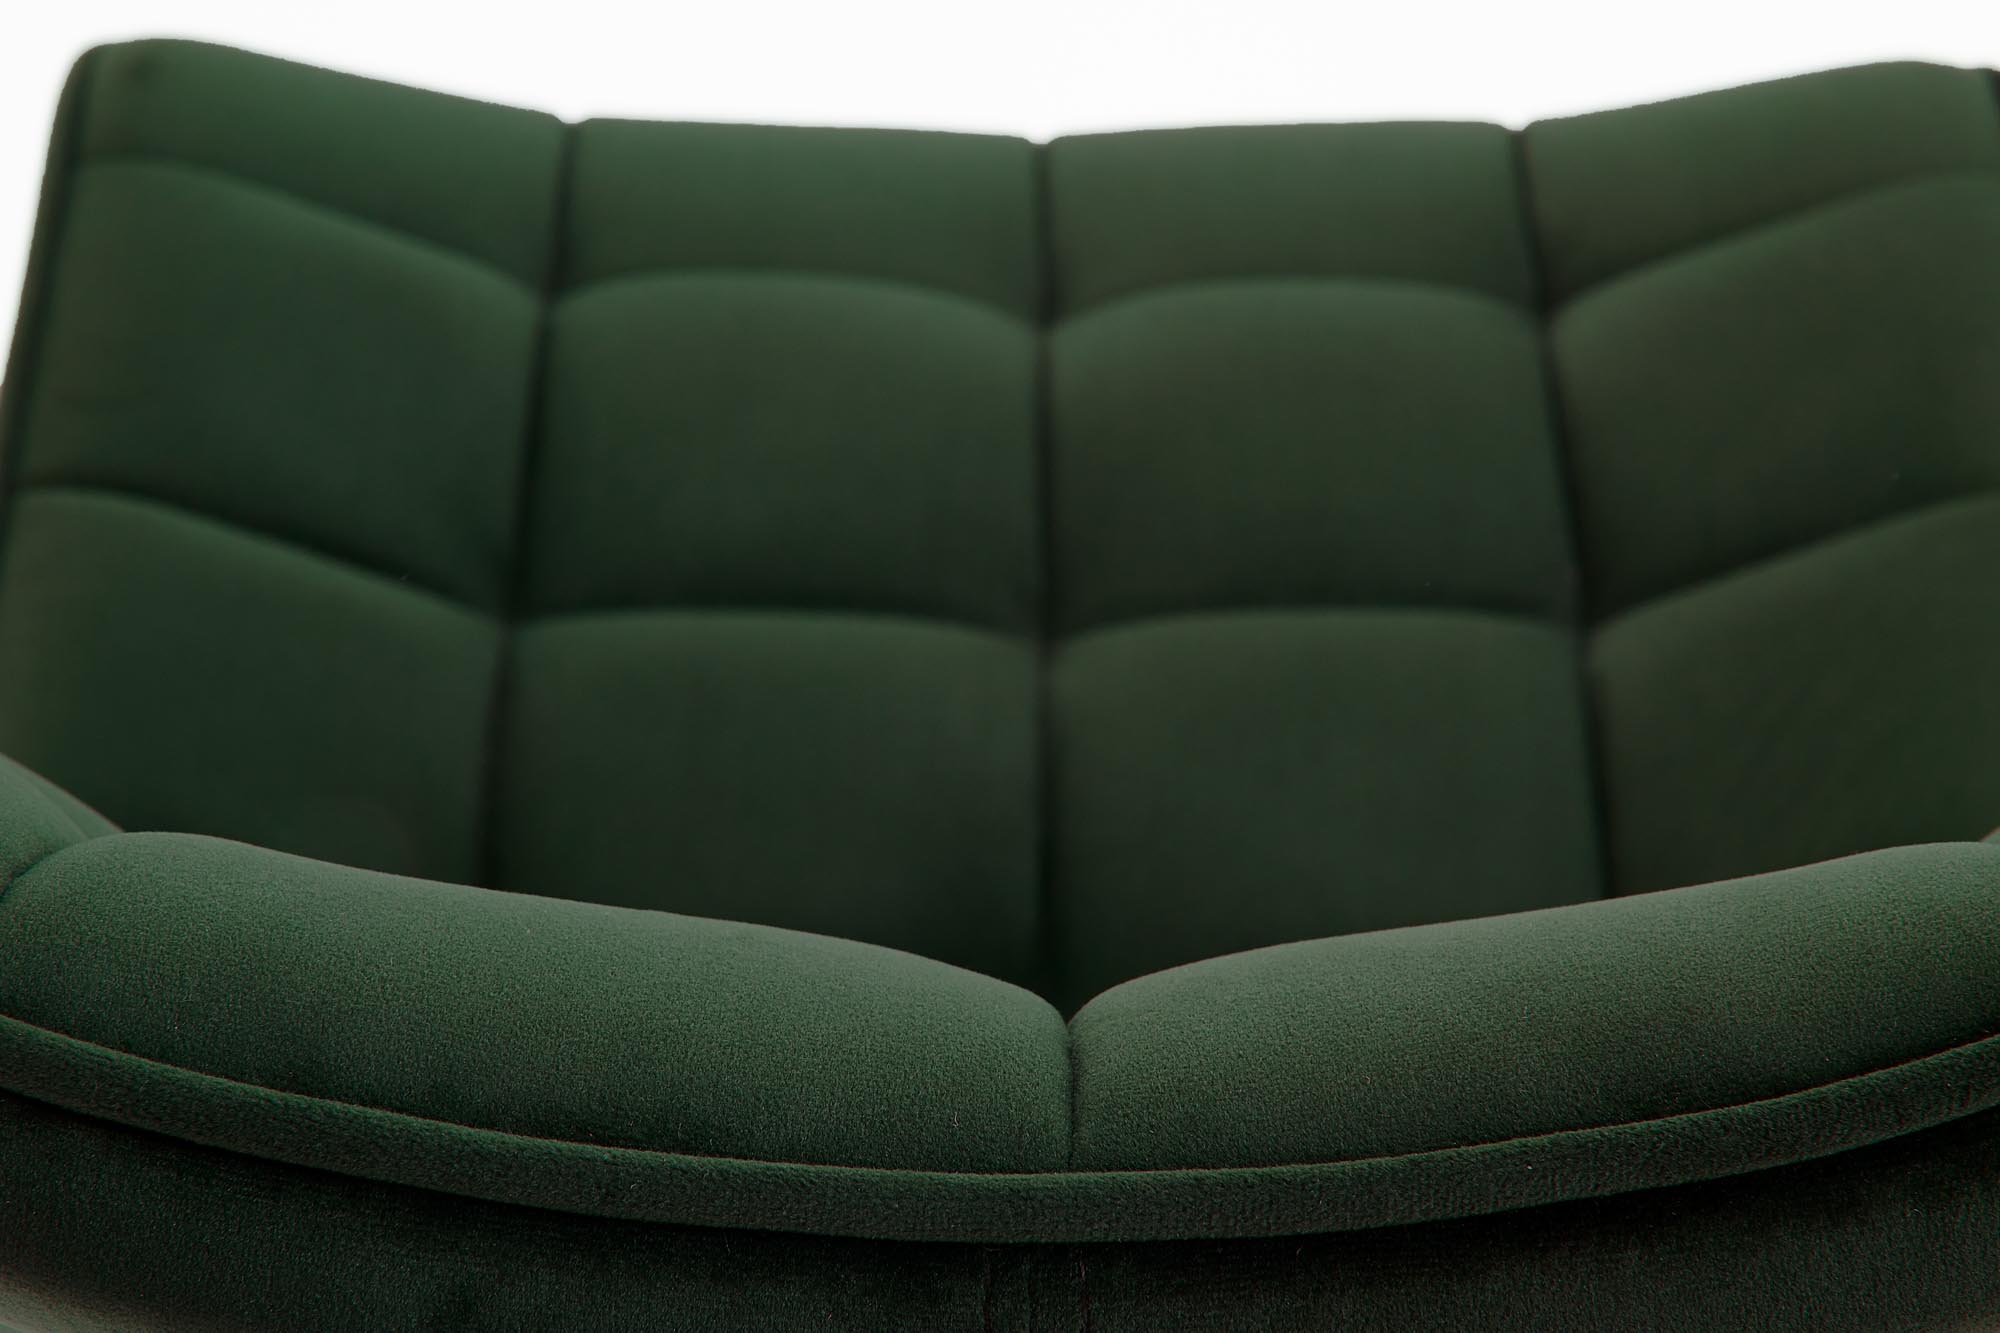 Čalúnená stolička K332 s kovovými nohami - tmavozelená Stolička čalúnená k332 - tmavý Zelený